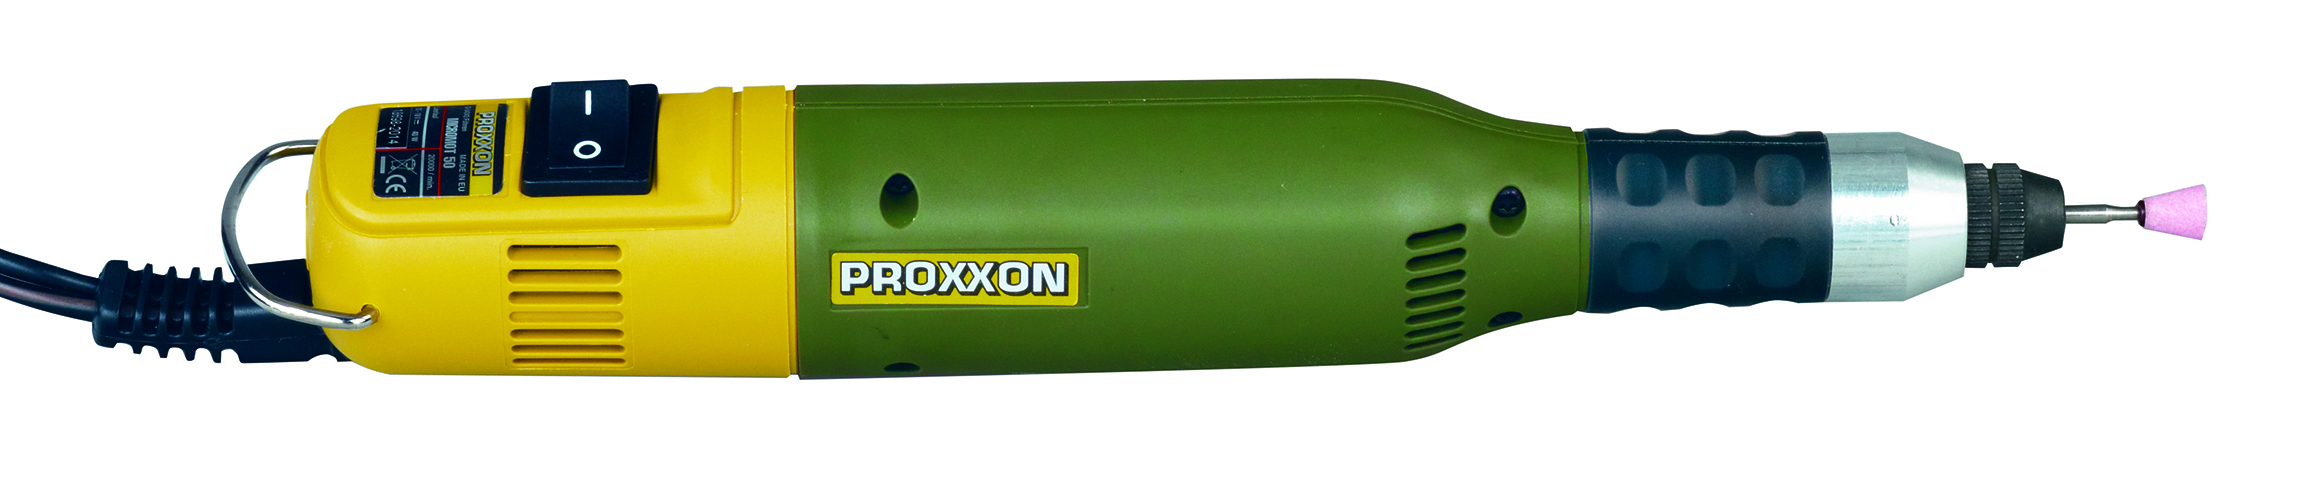 PROXXON 28500 vrtačka/frézka MICROMOT 60